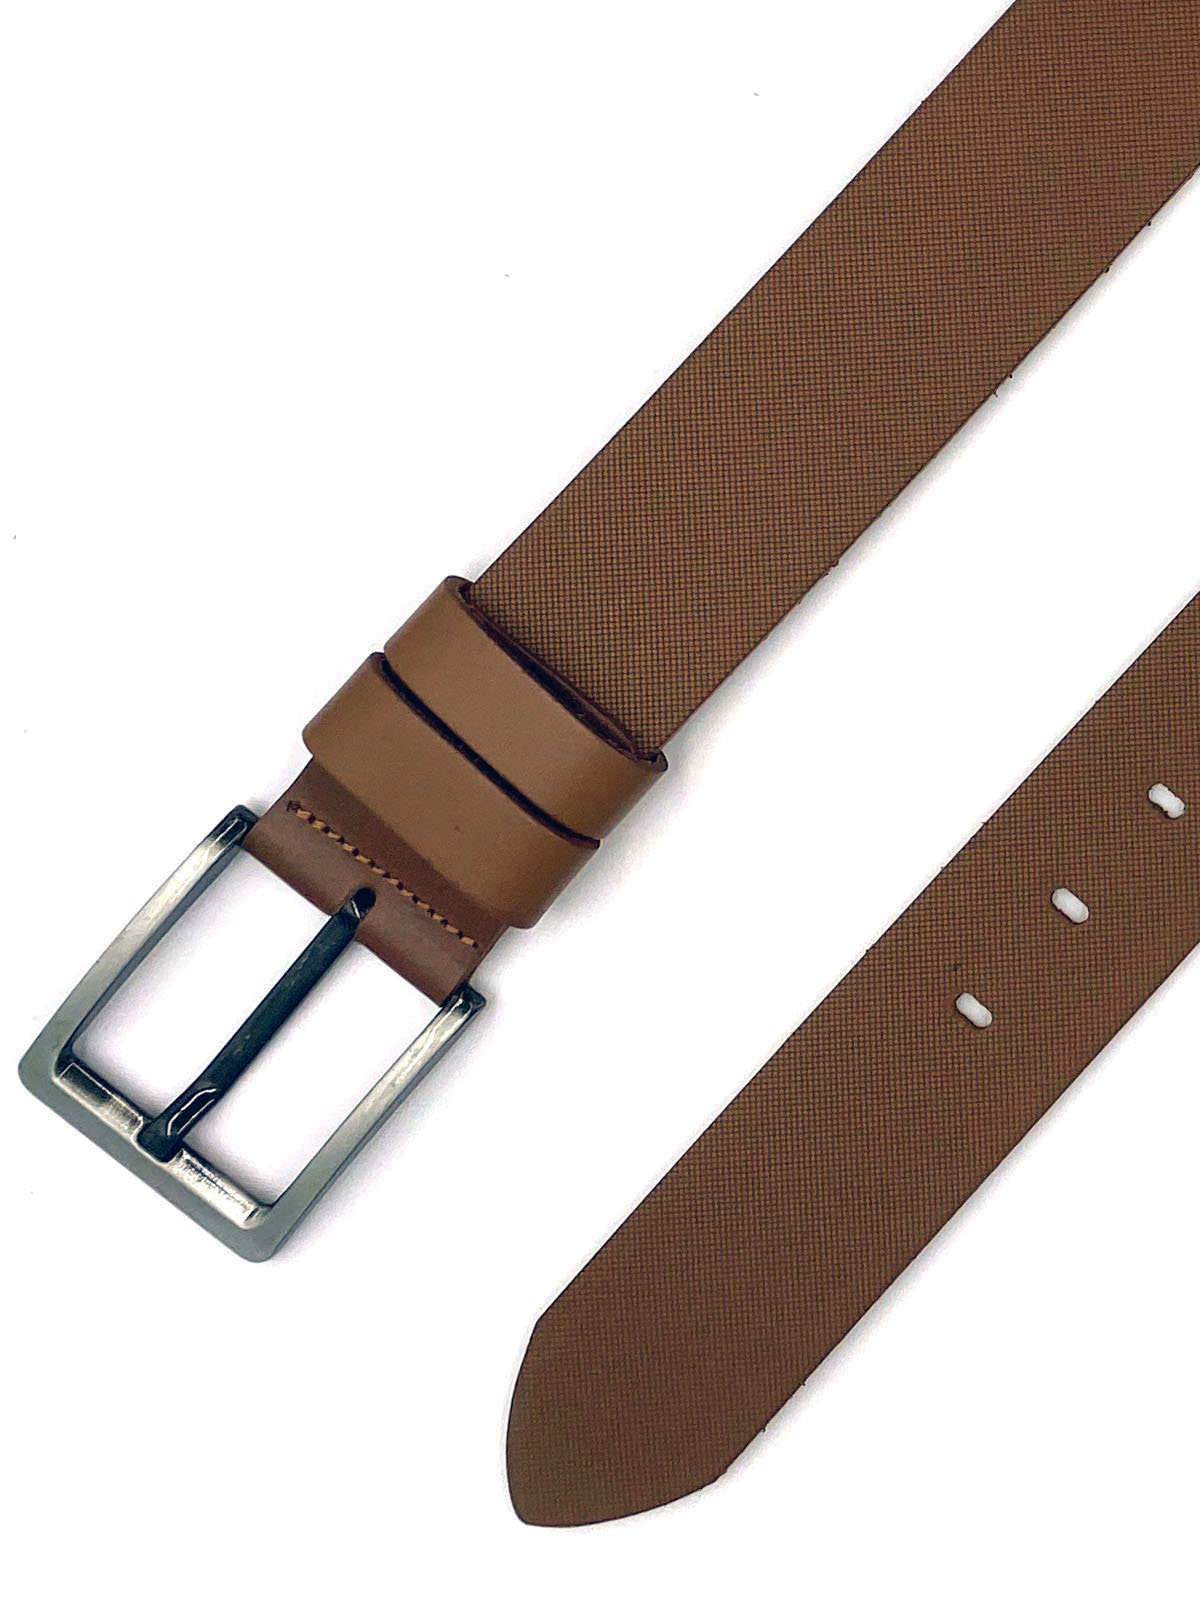 Belt in camel color - 10437 - € 24.75 img3